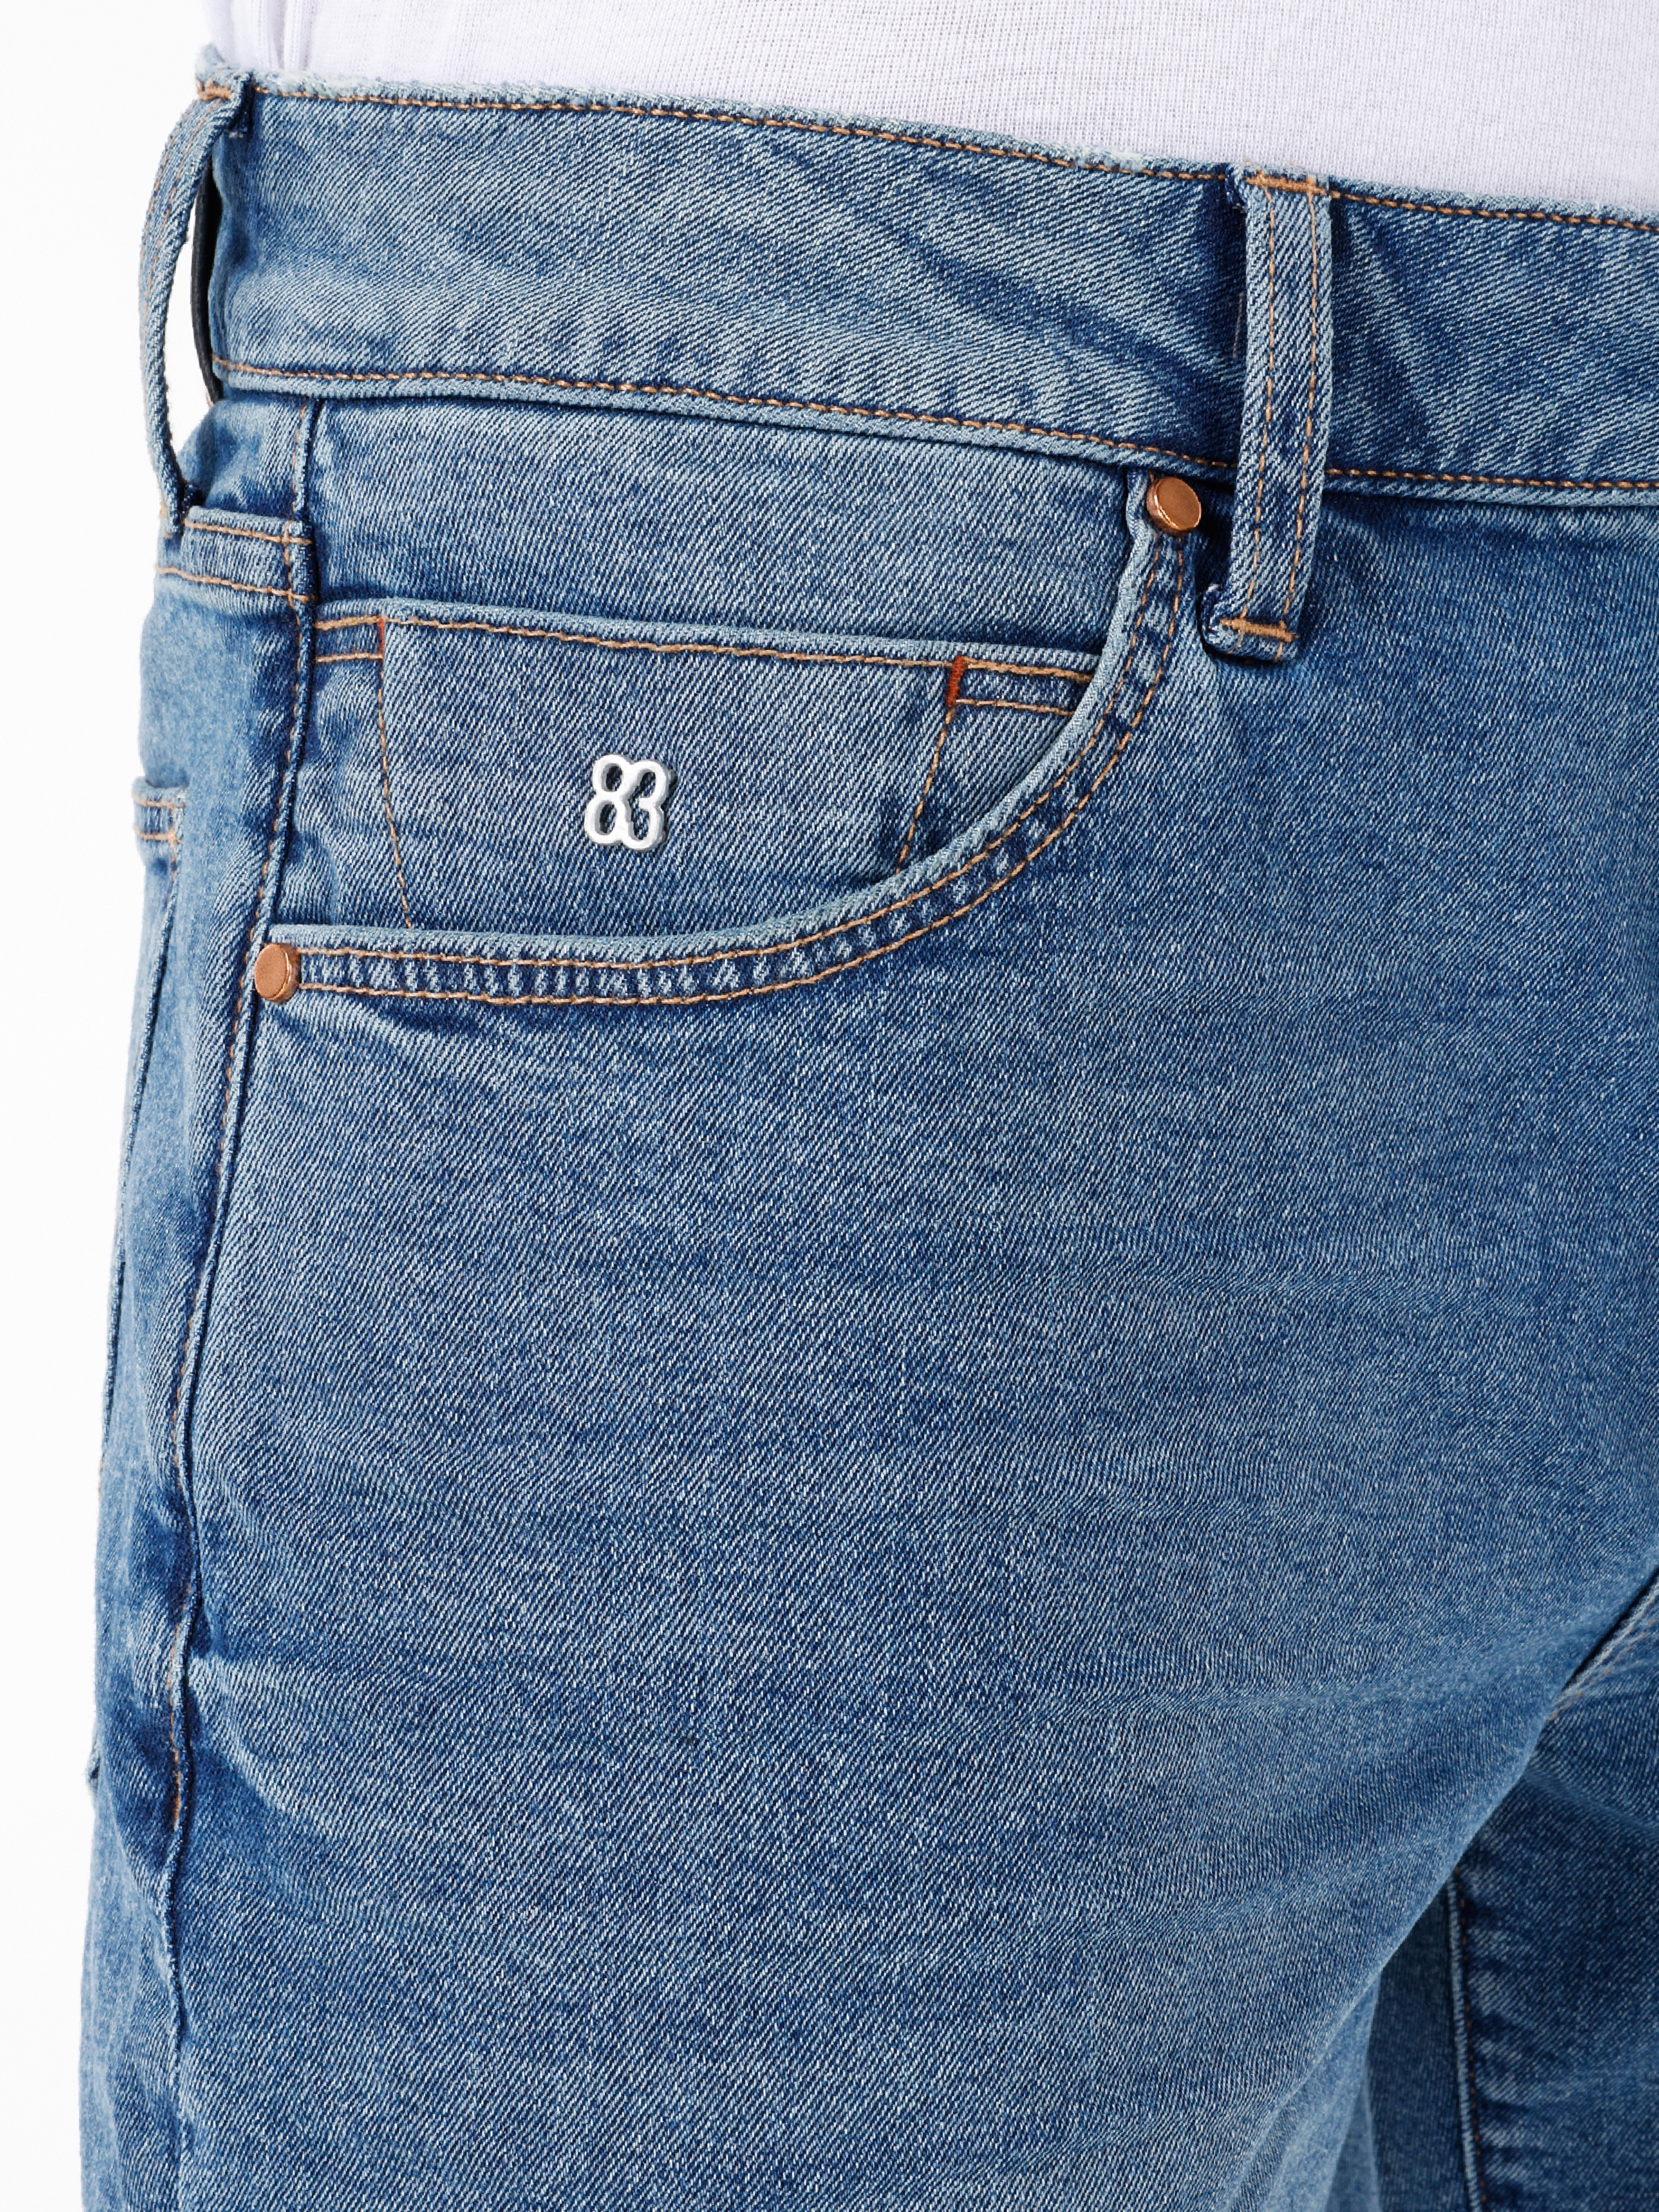 Afișați detalii pentru Short / Pantaloni Scurti De Barbati Denim Straight Fit 044 KARL 